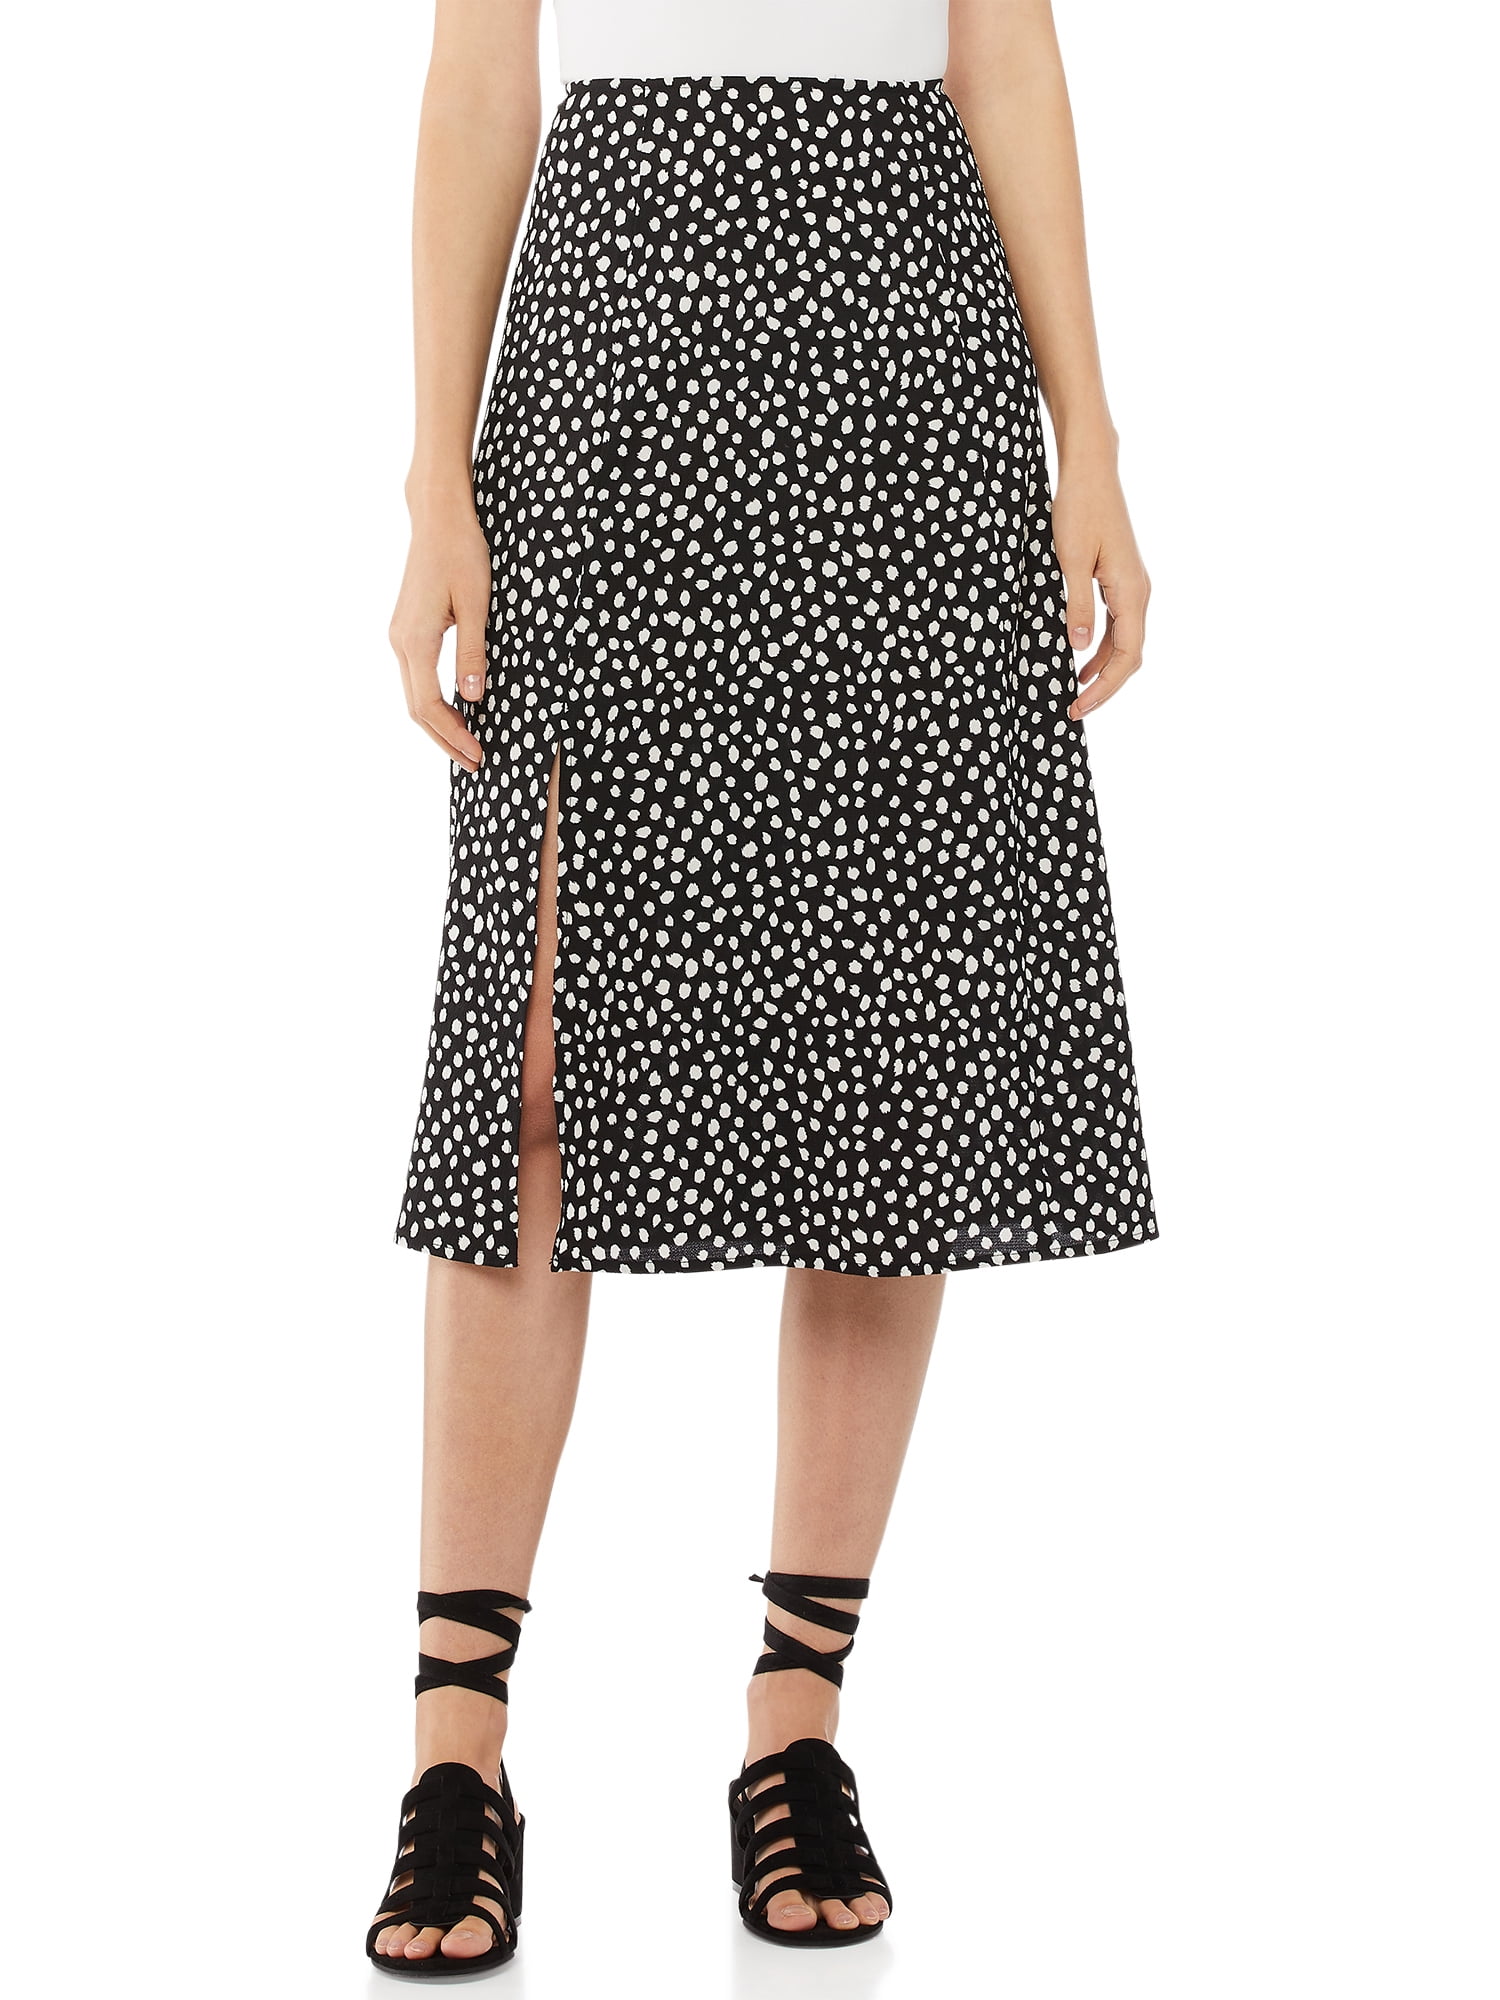 Scoop Women’s Slit Skirt - Walmart.com